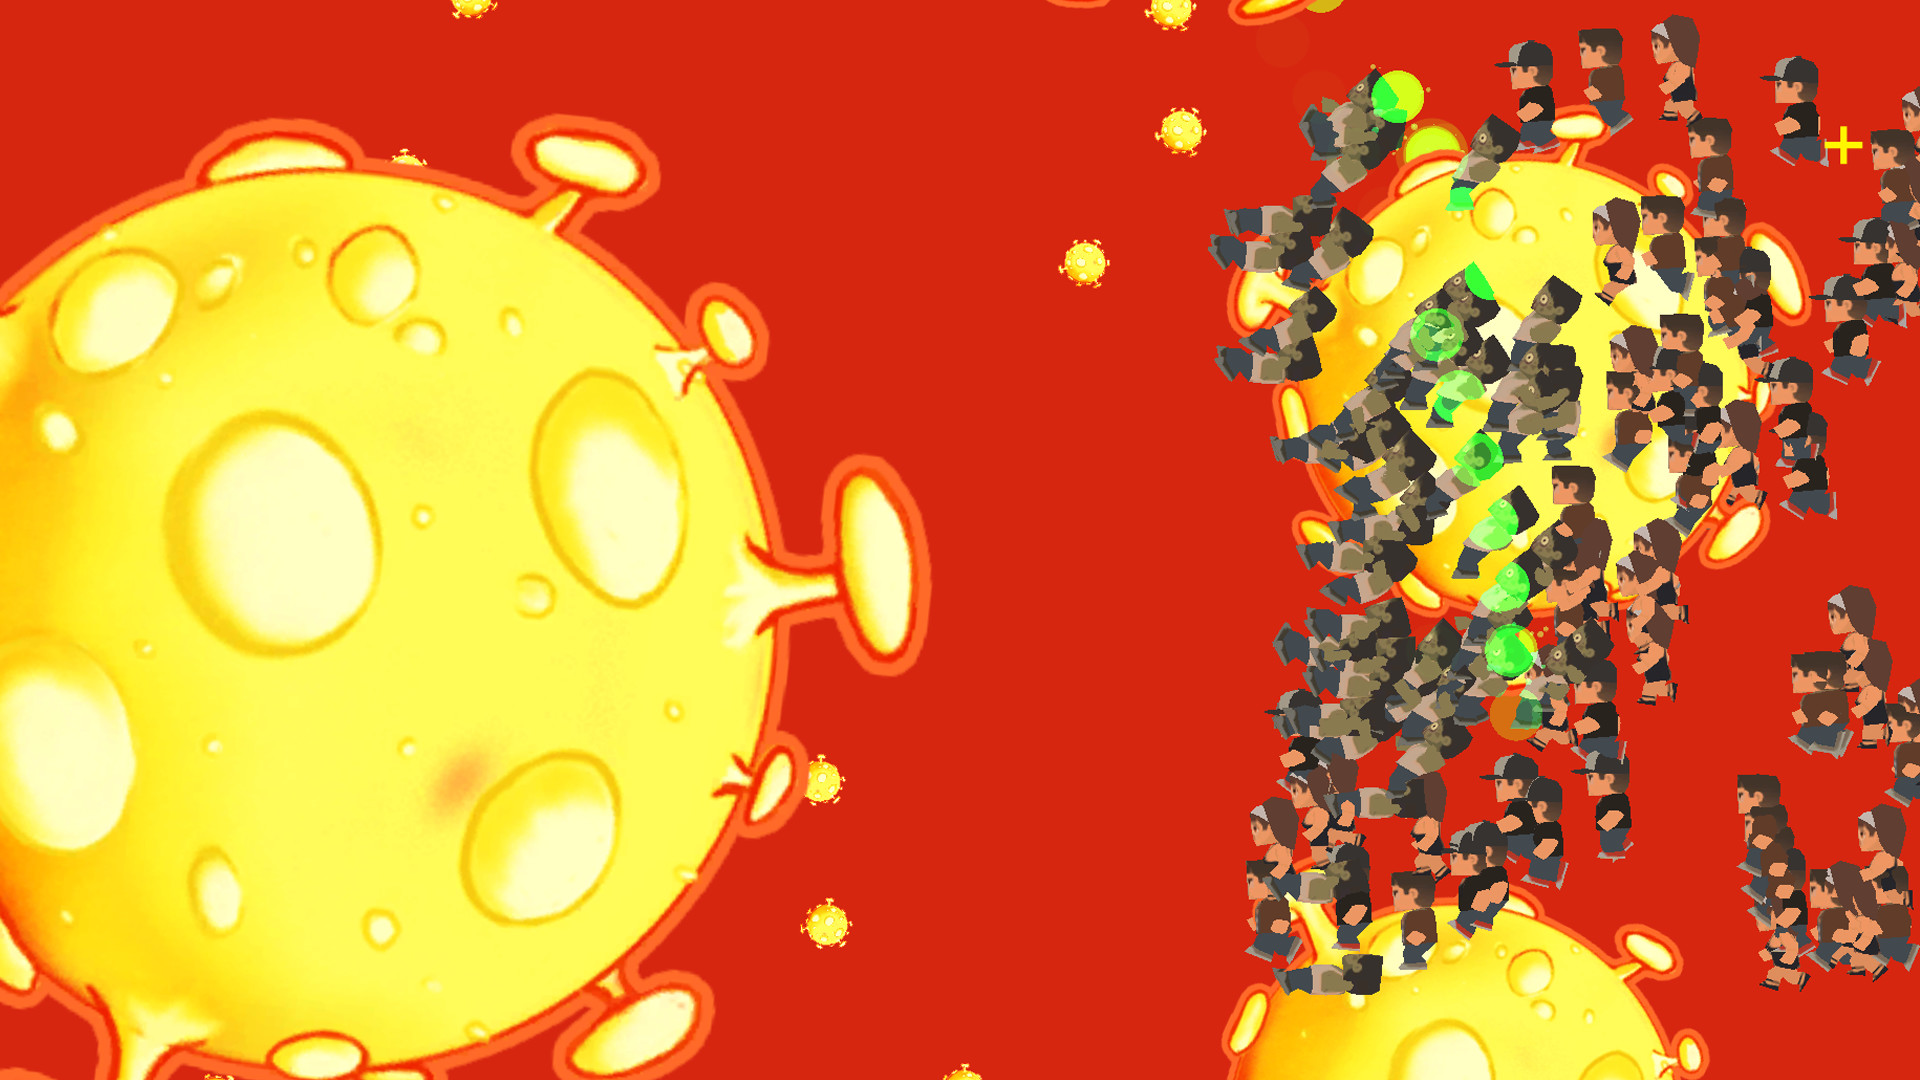 新型コロナウイルス問題を風刺したゲーム Coronavirus Attack が中国steamで販売停止に 政府を批判する政治的メッセージも散見